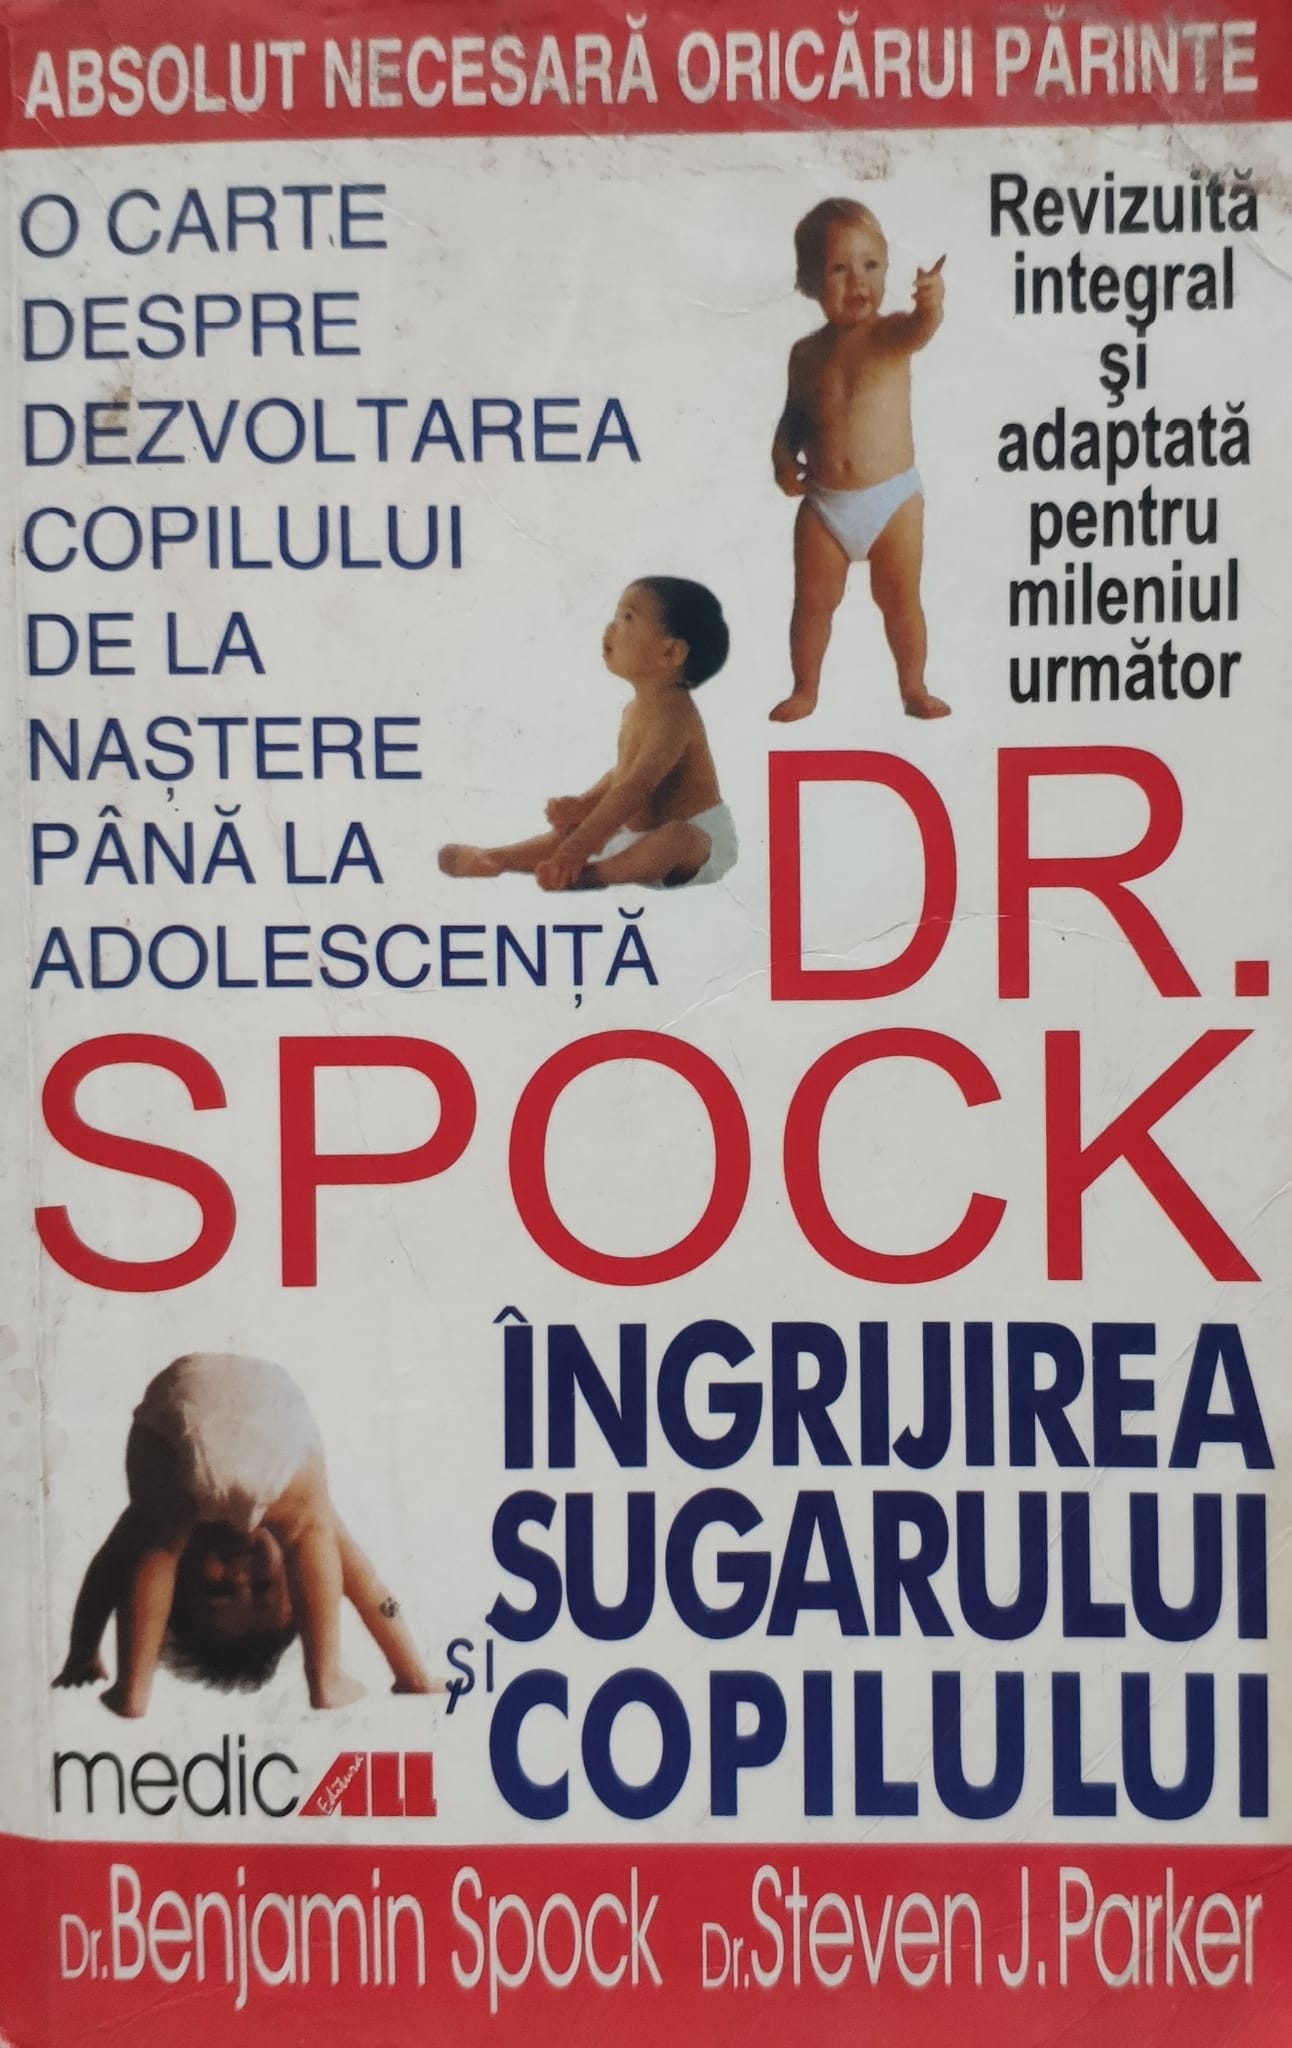 ingrijirea sugarului si copilului                                                                    benjamin spock steven j. parker                                                                     